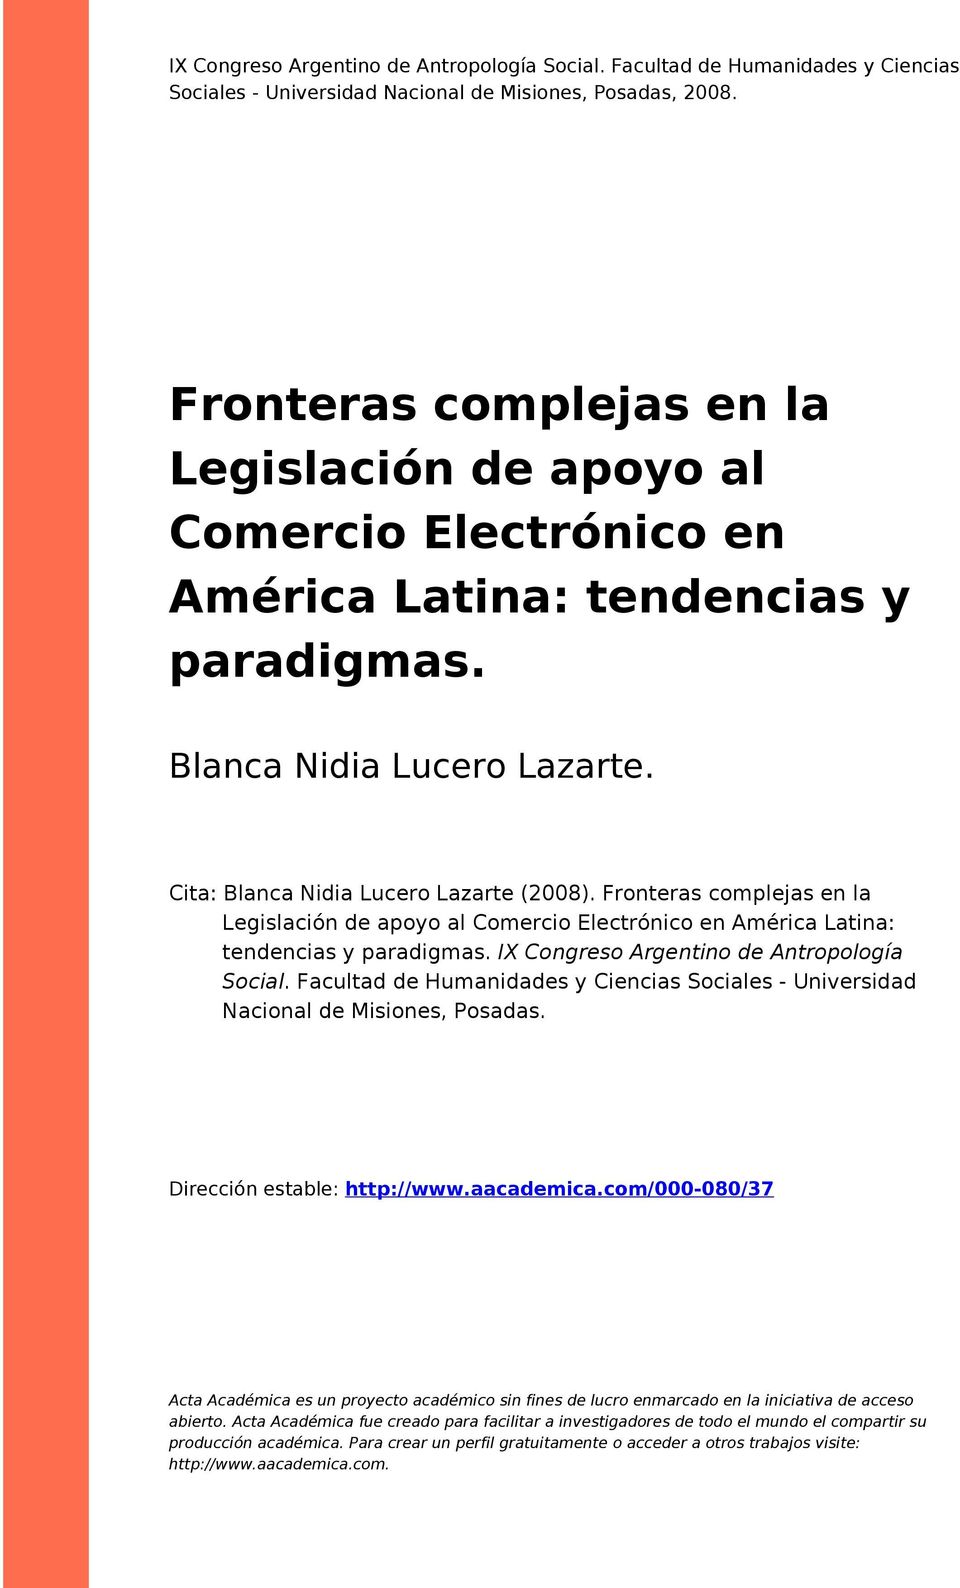 Fronteras complejas en la Legislación de apoyo al Comercio Electrónico en América Latina: tendencias y paradigmas. IX Congreso Argentino de Antropología Social.